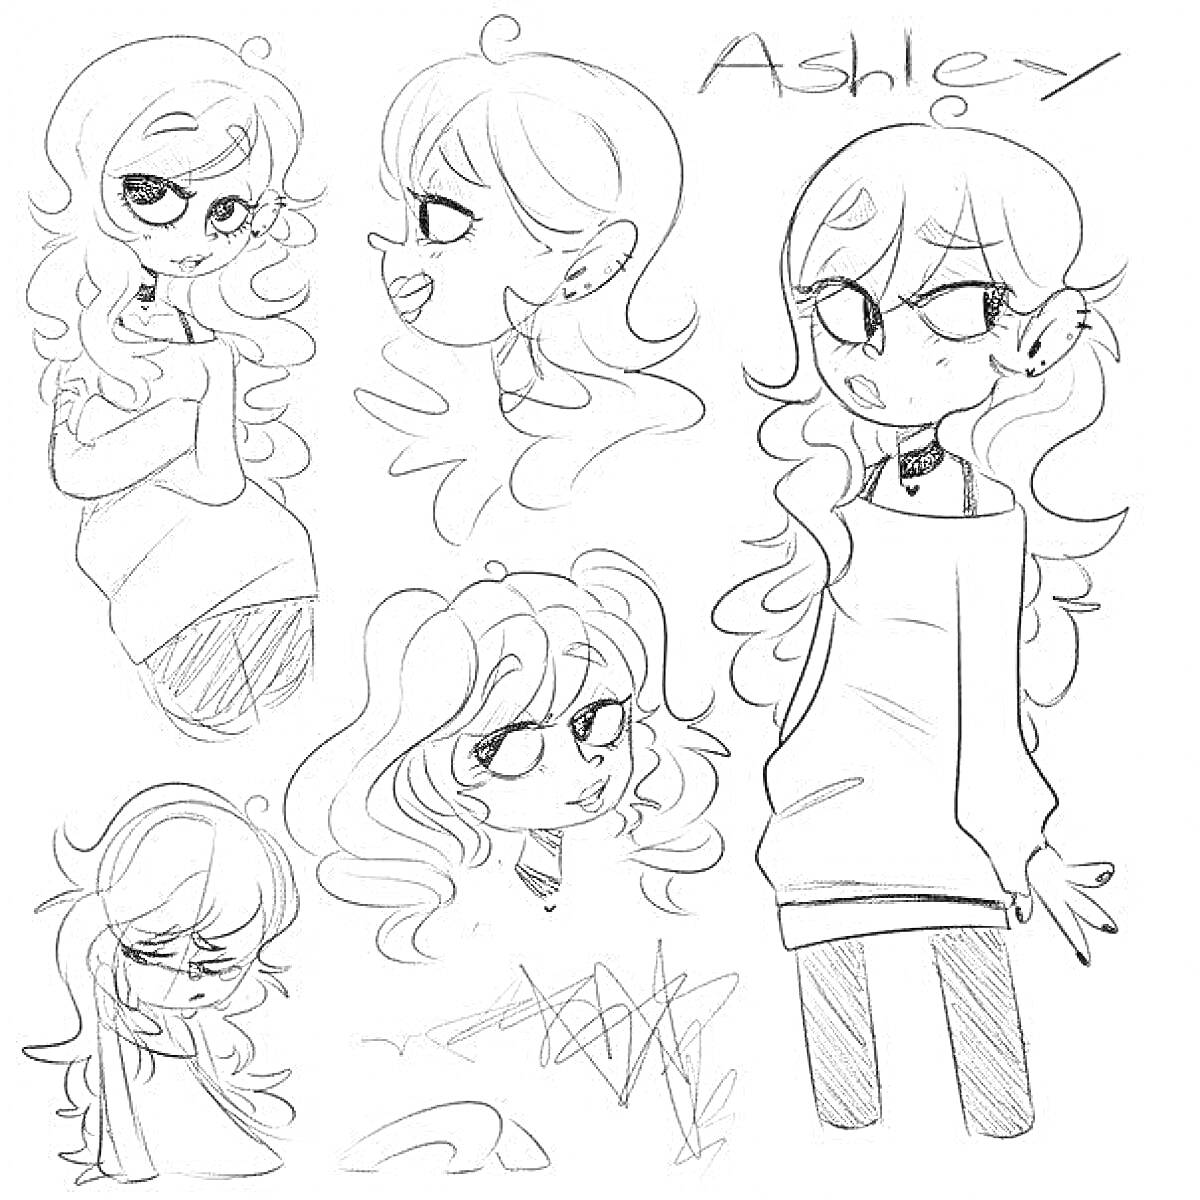 Раскраска с несколькими изображениями героини по имени Ashley с разными позами, крупными глазами и длинными вьющимися волосами